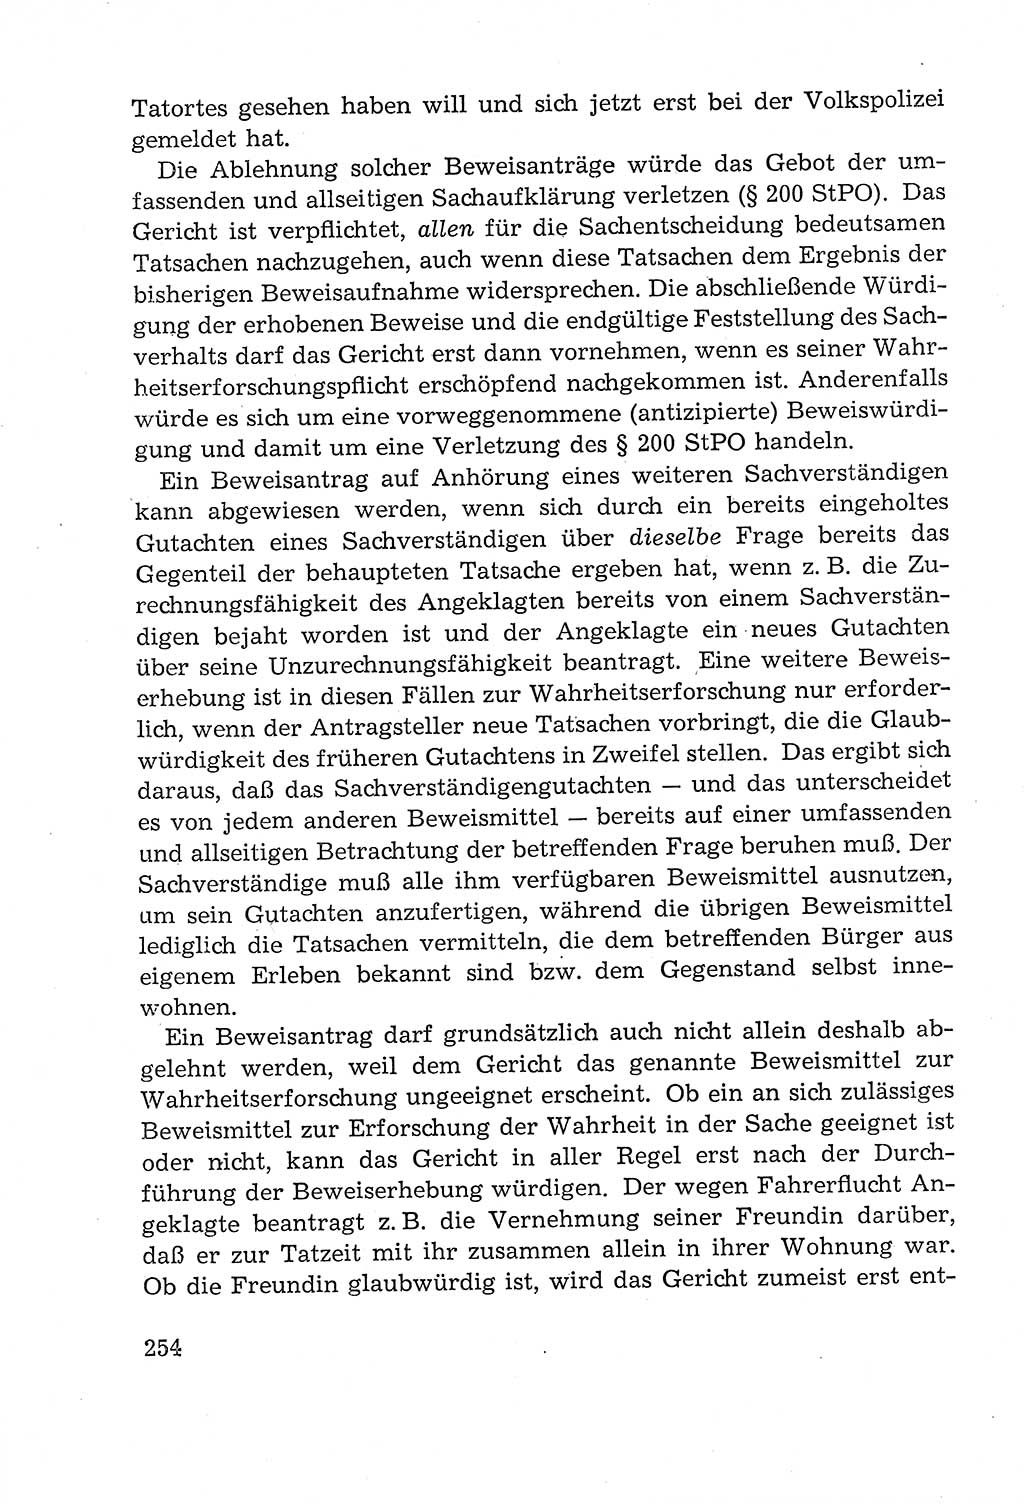 Leitfaden des Strafprozeßrechts der Deutschen Demokratischen Republik (DDR) 1959, Seite 254 (LF StPR DDR 1959, S. 254)